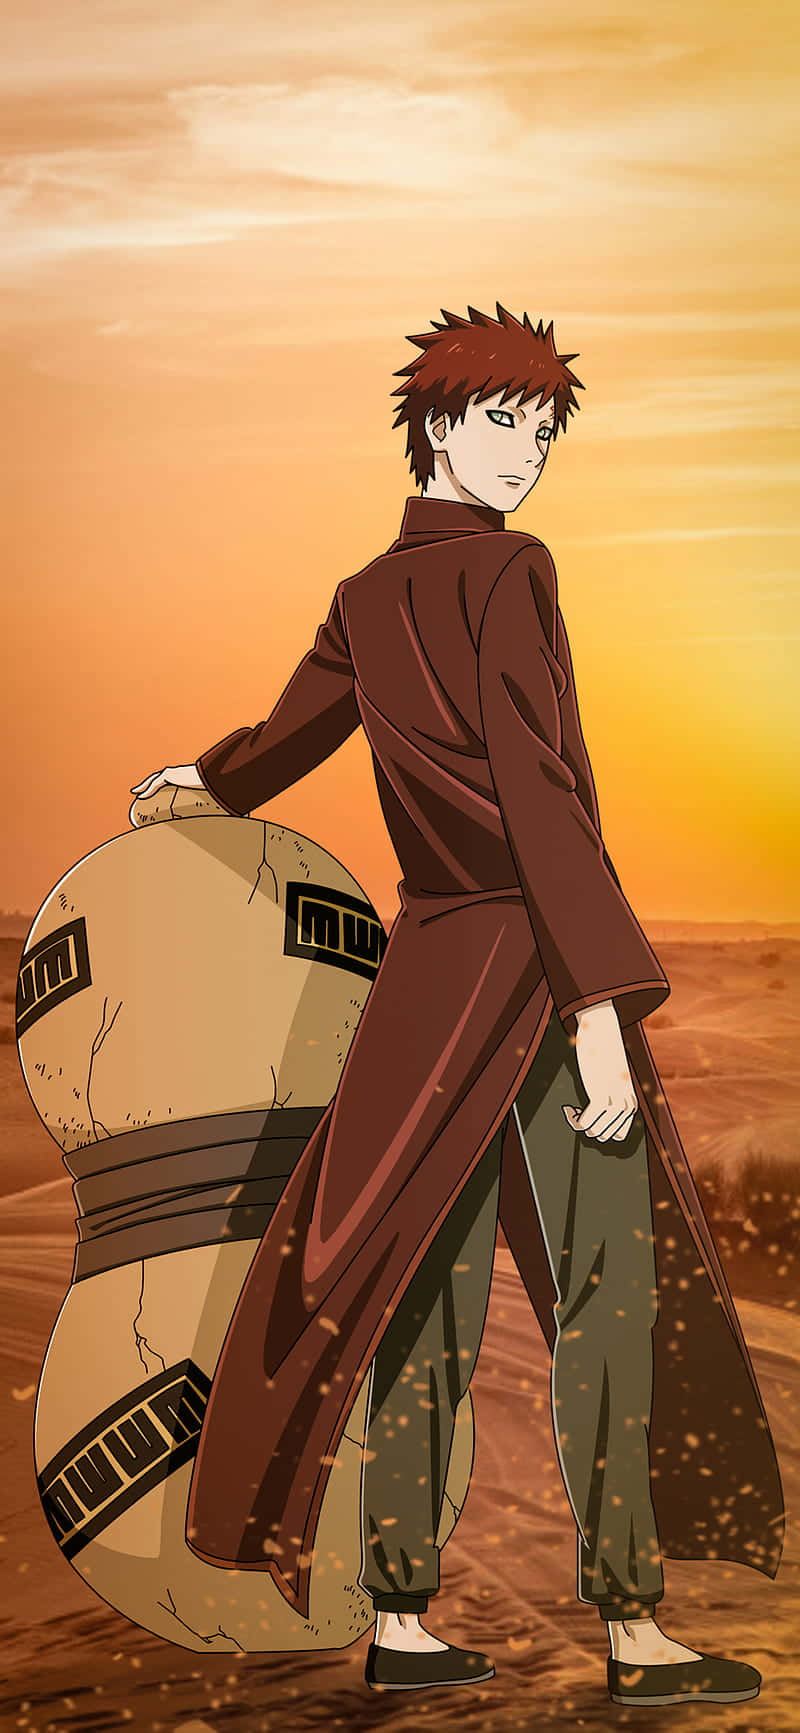 Gaara af Sandet i Naruto anime Wallpaper